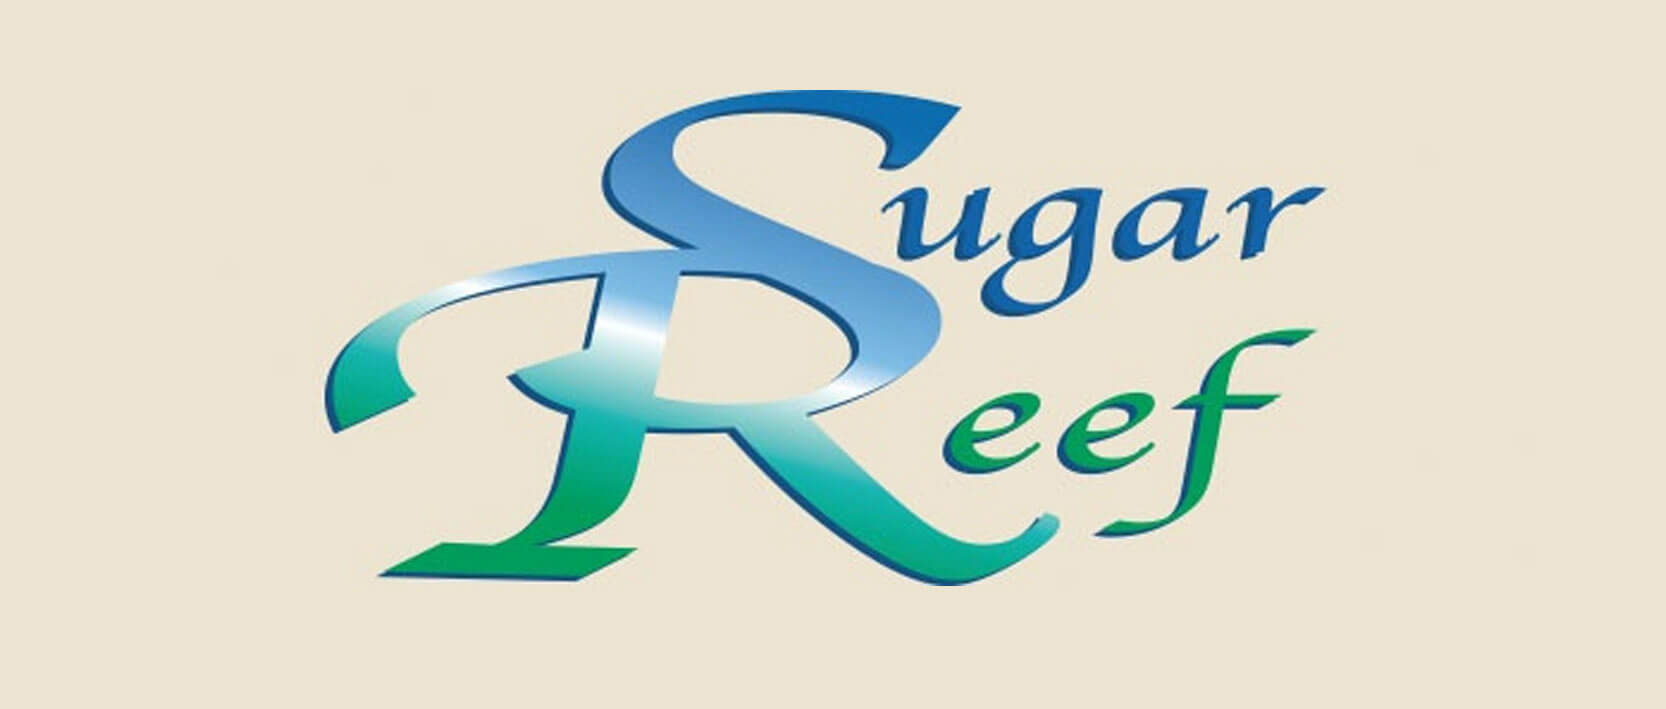 Dreams Huatulco Resort Restaurants and Bars - Sugar Reef